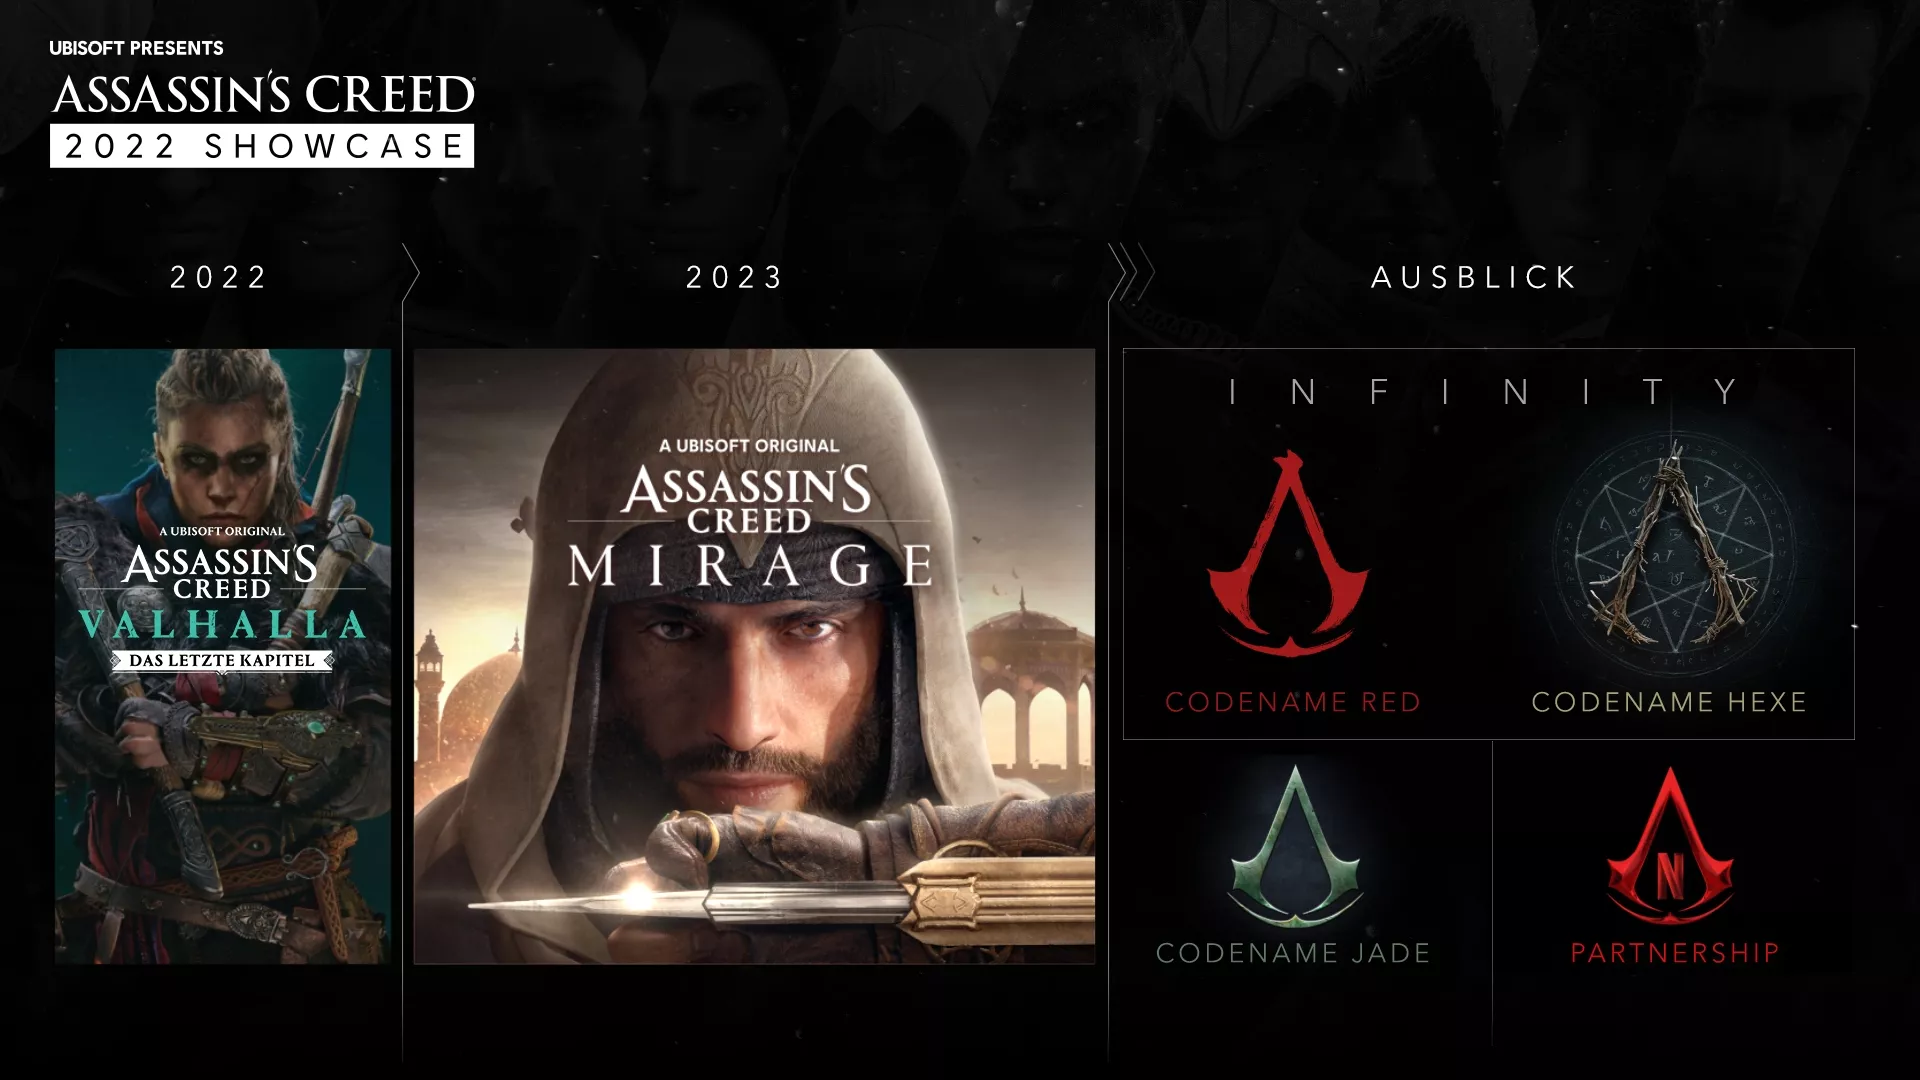 Ubisoft detaillieren die kommenden Assassin's Creed Teile und die Zukunft der Franchise Heropic